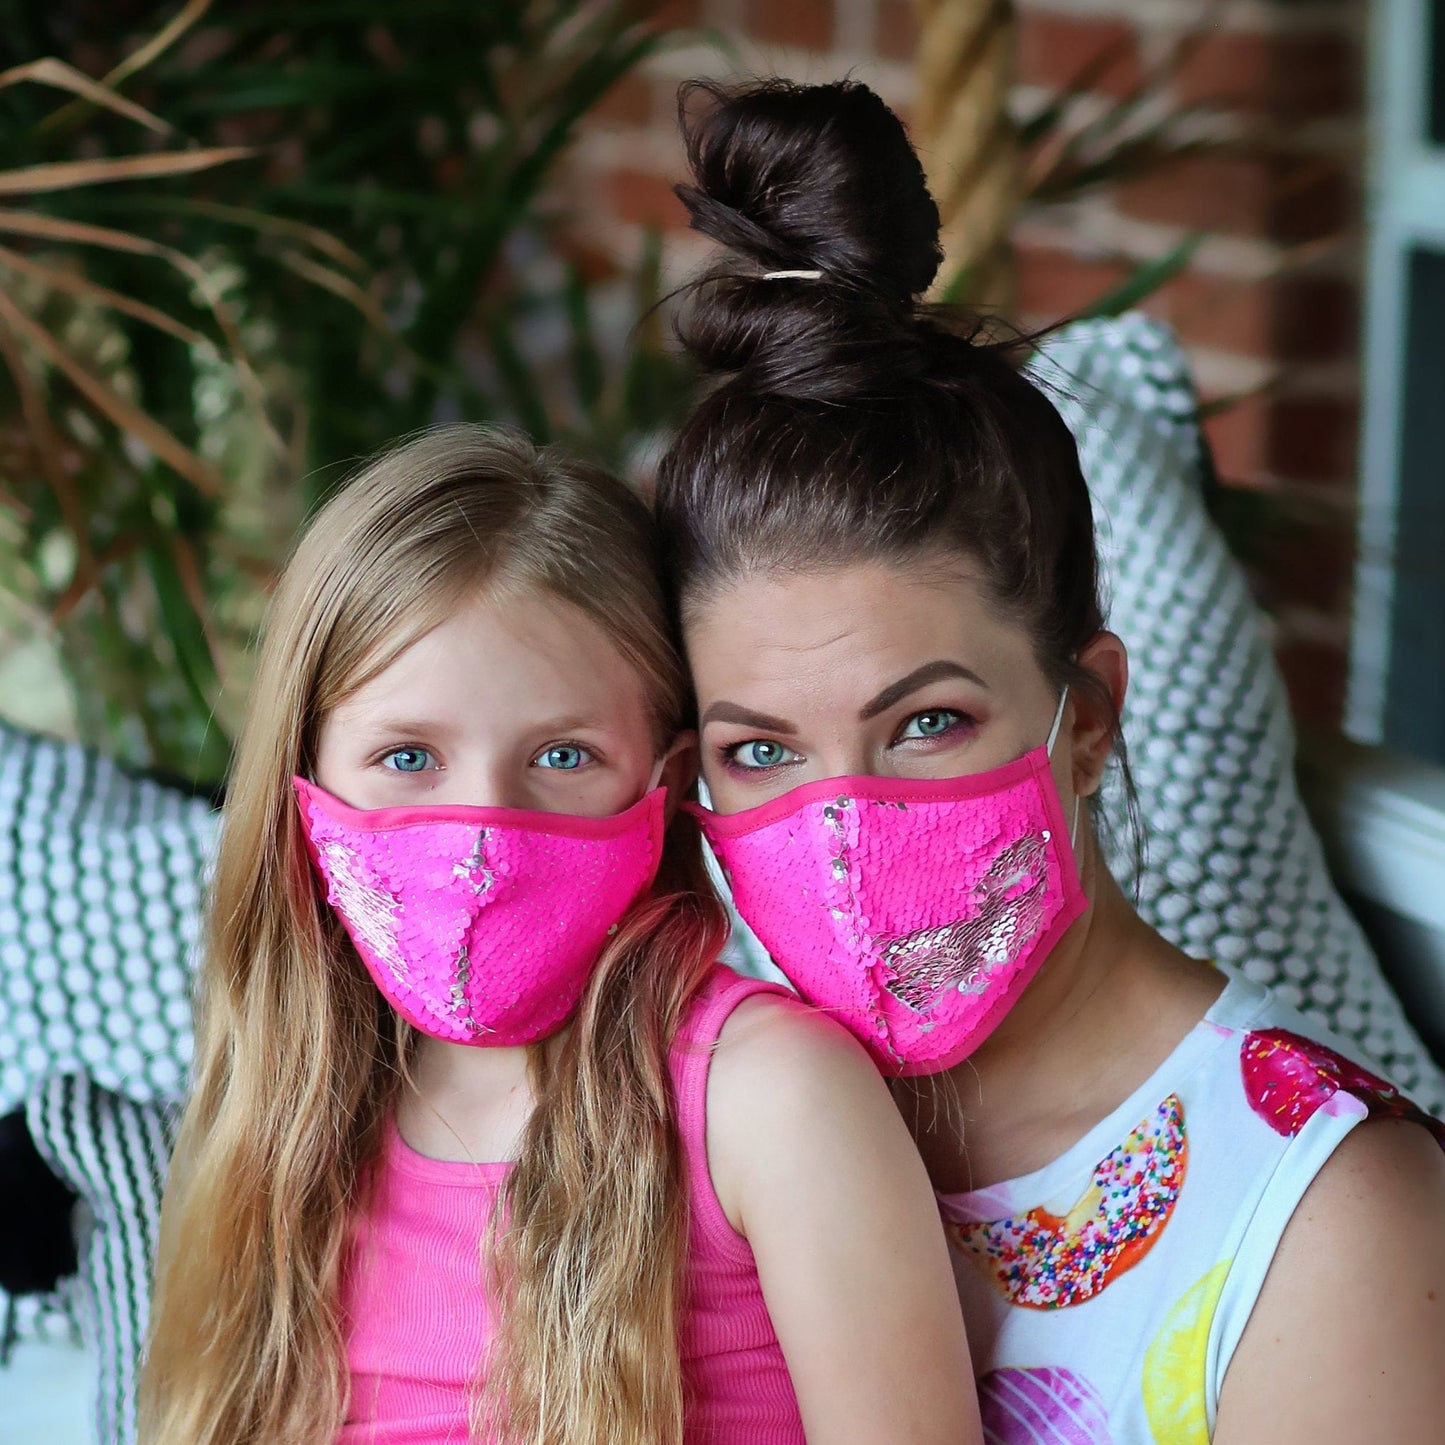 Sequin Face Mask - Pocket Filter Face Mask - Dust Face Mask - Glam Face Mask - Watermelon Pink Sequin Mask